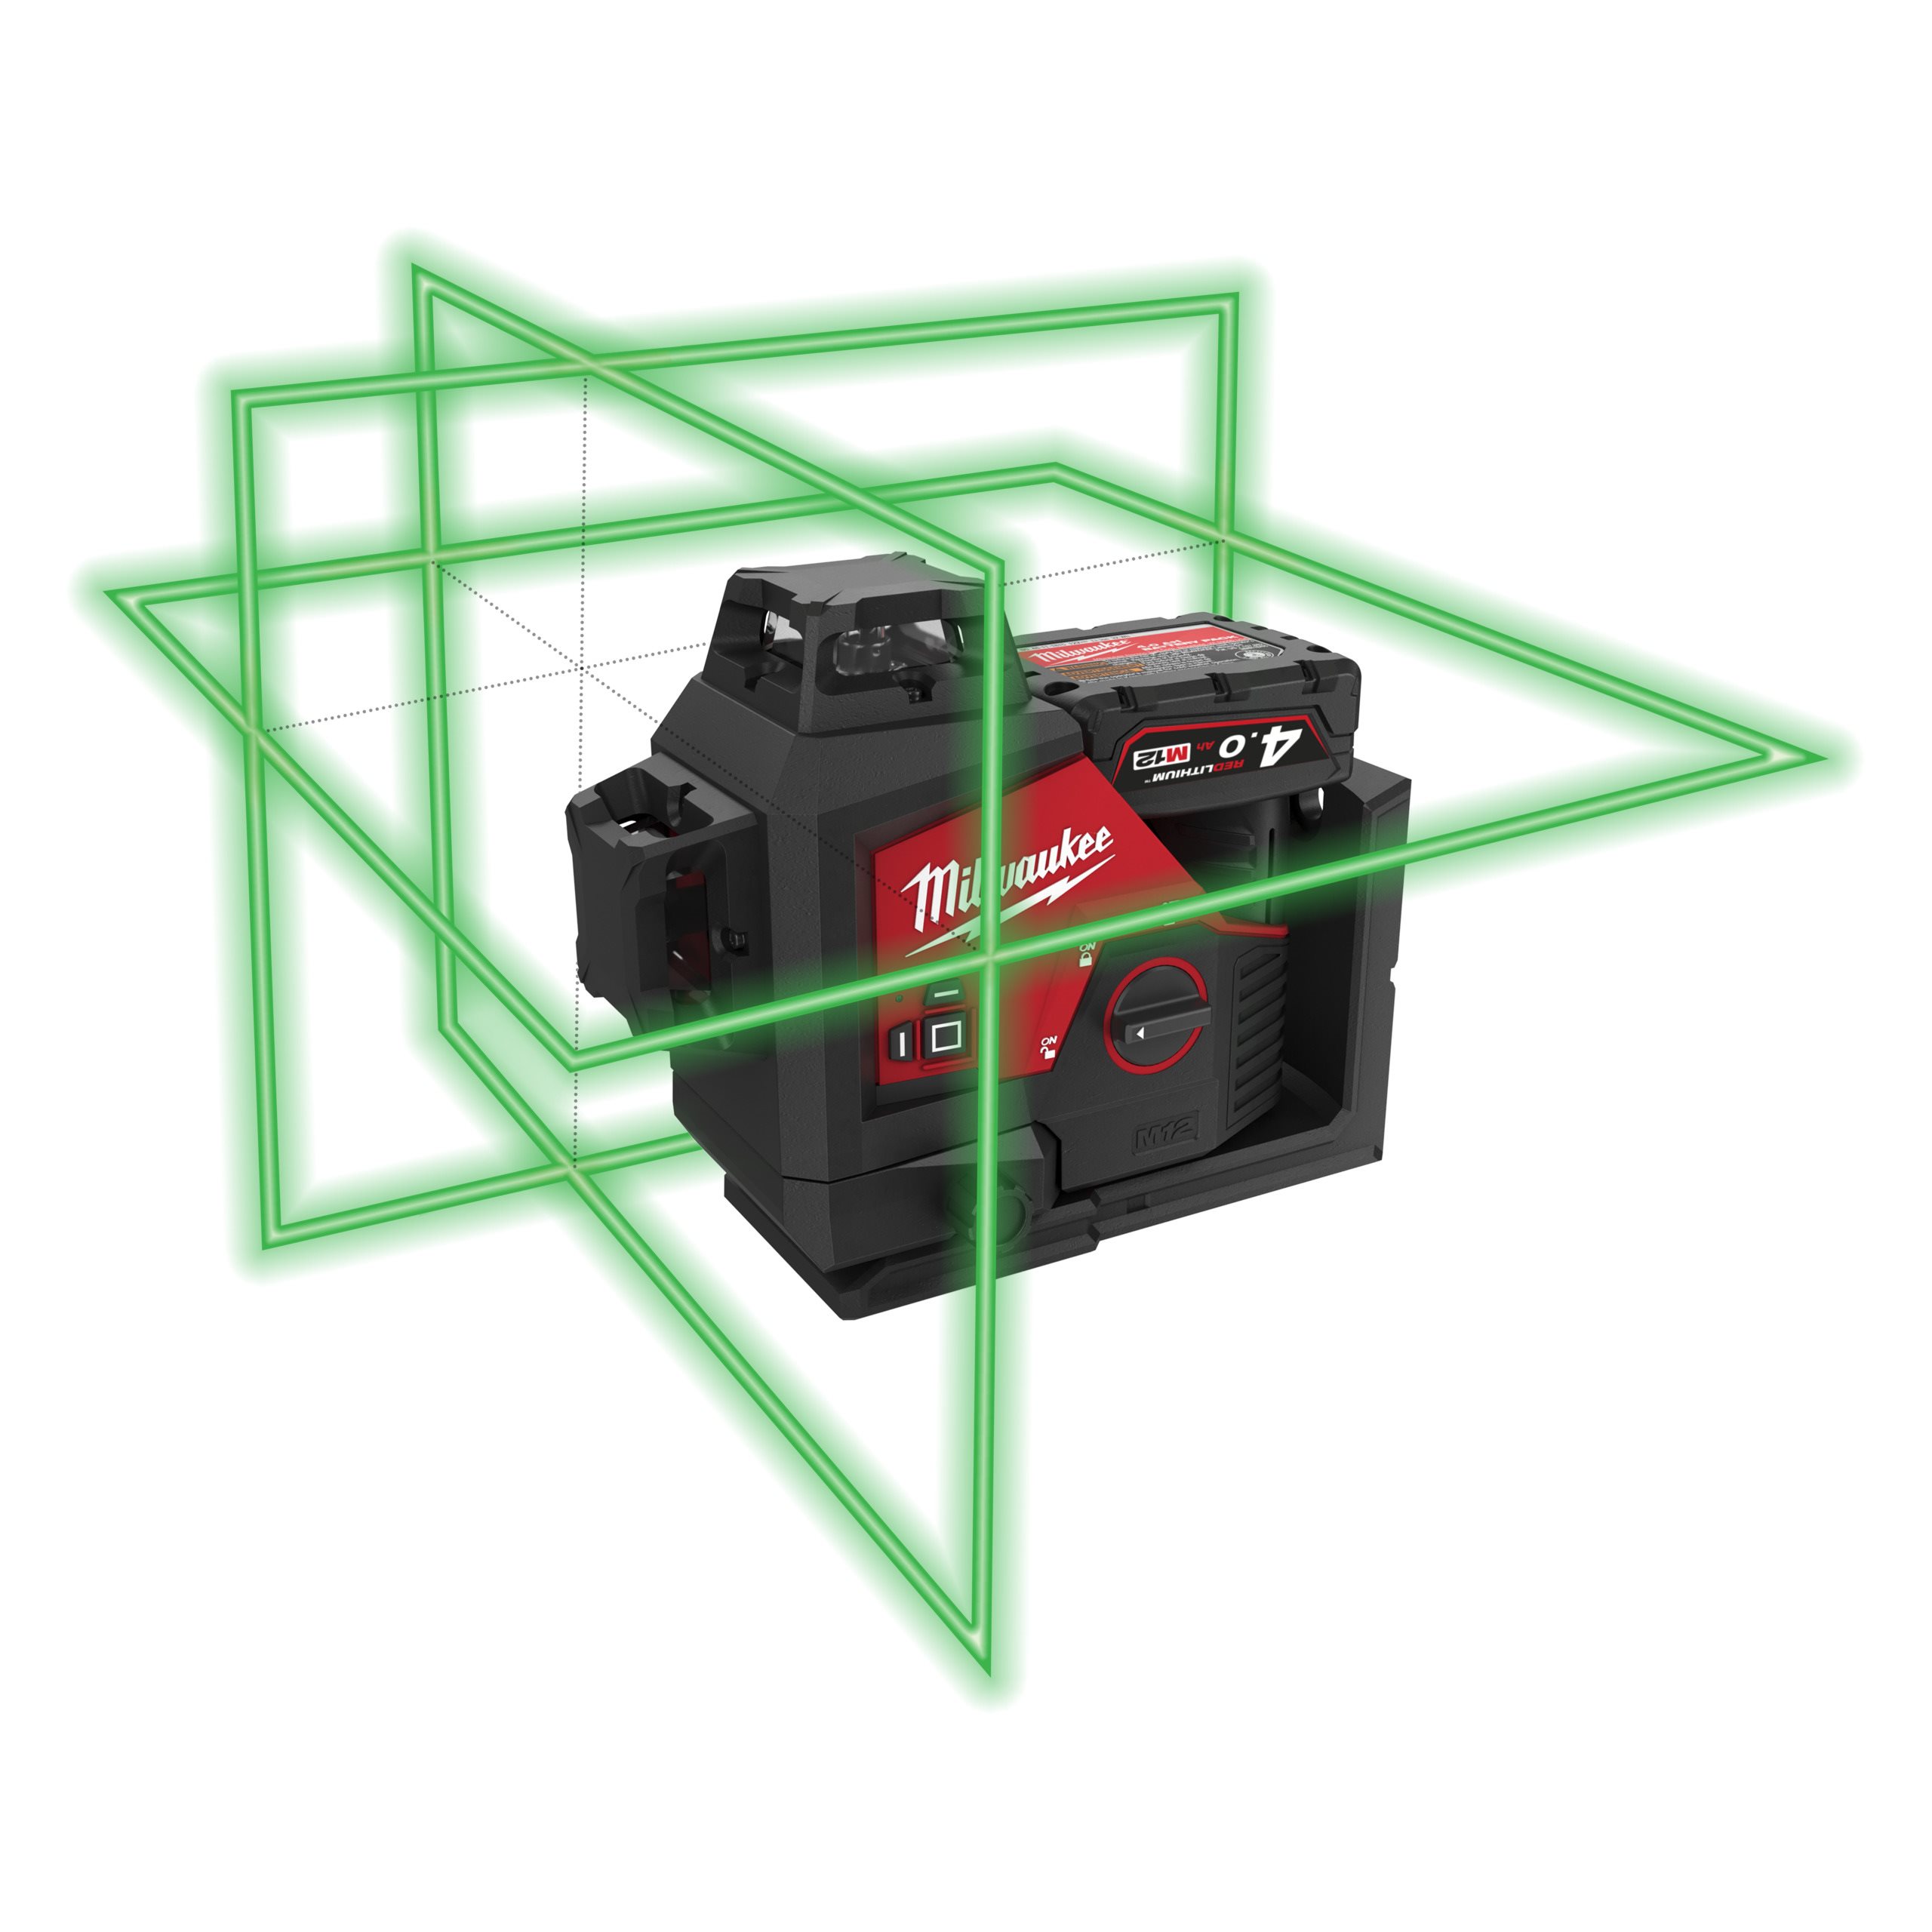 Аккумуляторный мультилинейный лазерный нивелир (3 линии x 360) с зеленым лучем Milwaukee M12 3PL-401C (Li-Ion 4 Ач)  (Арт. 4933478102)